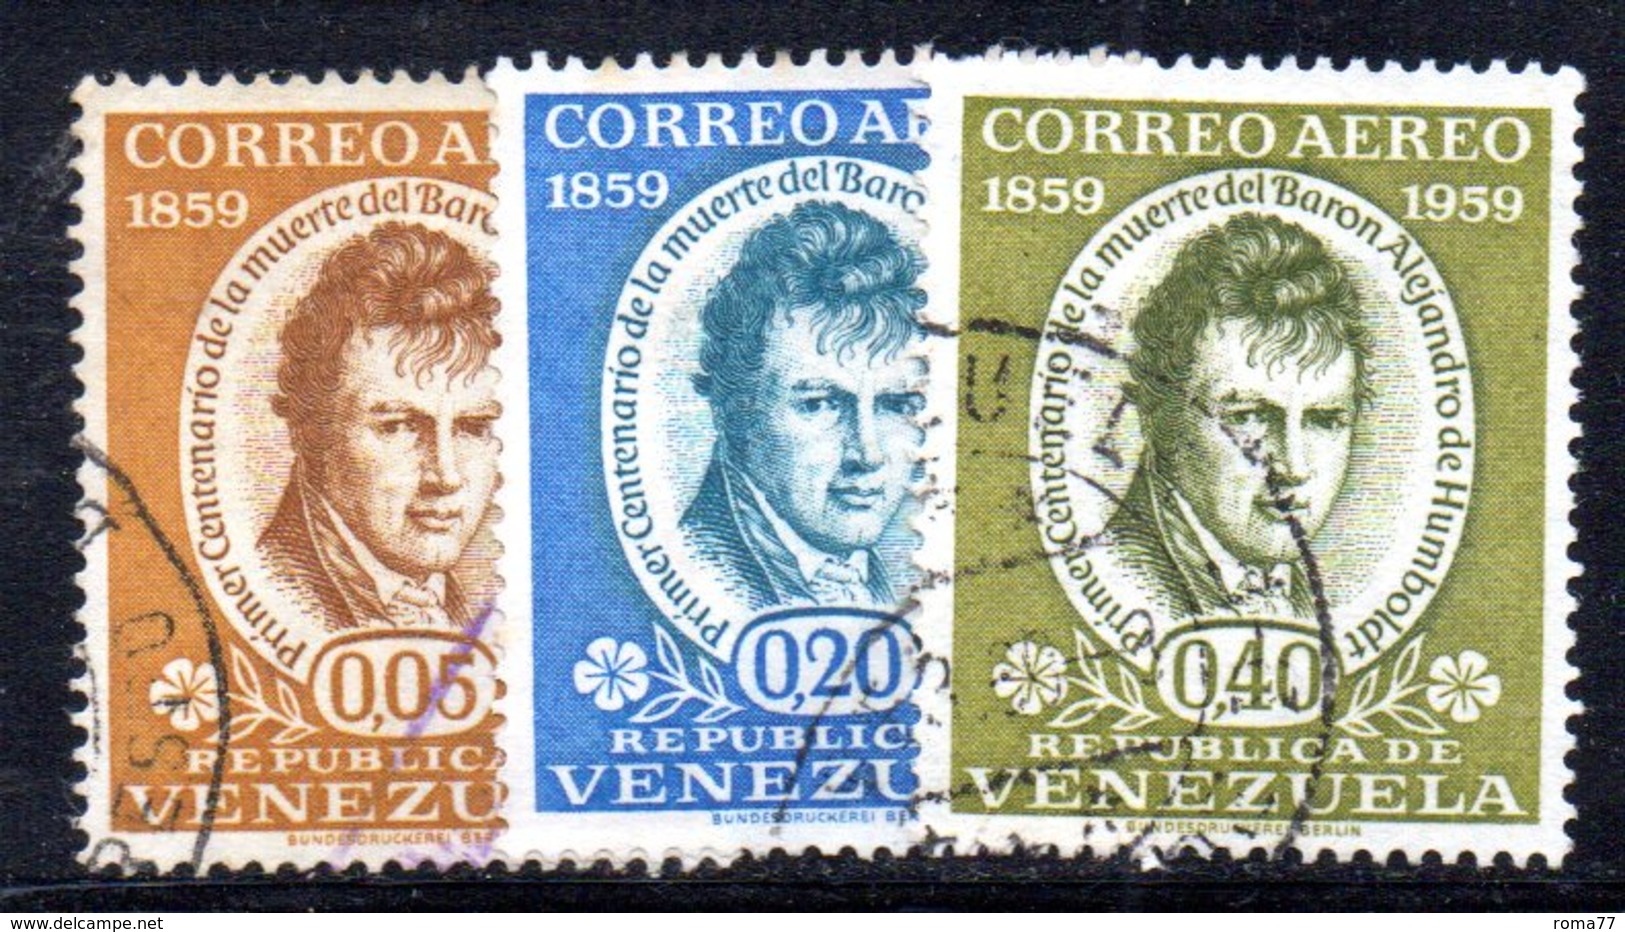 CI1220 - VENEZUELA 1960, Posta Aerea Serie Yvert N. 683/685  Usata.  Humboldt - Venezuela